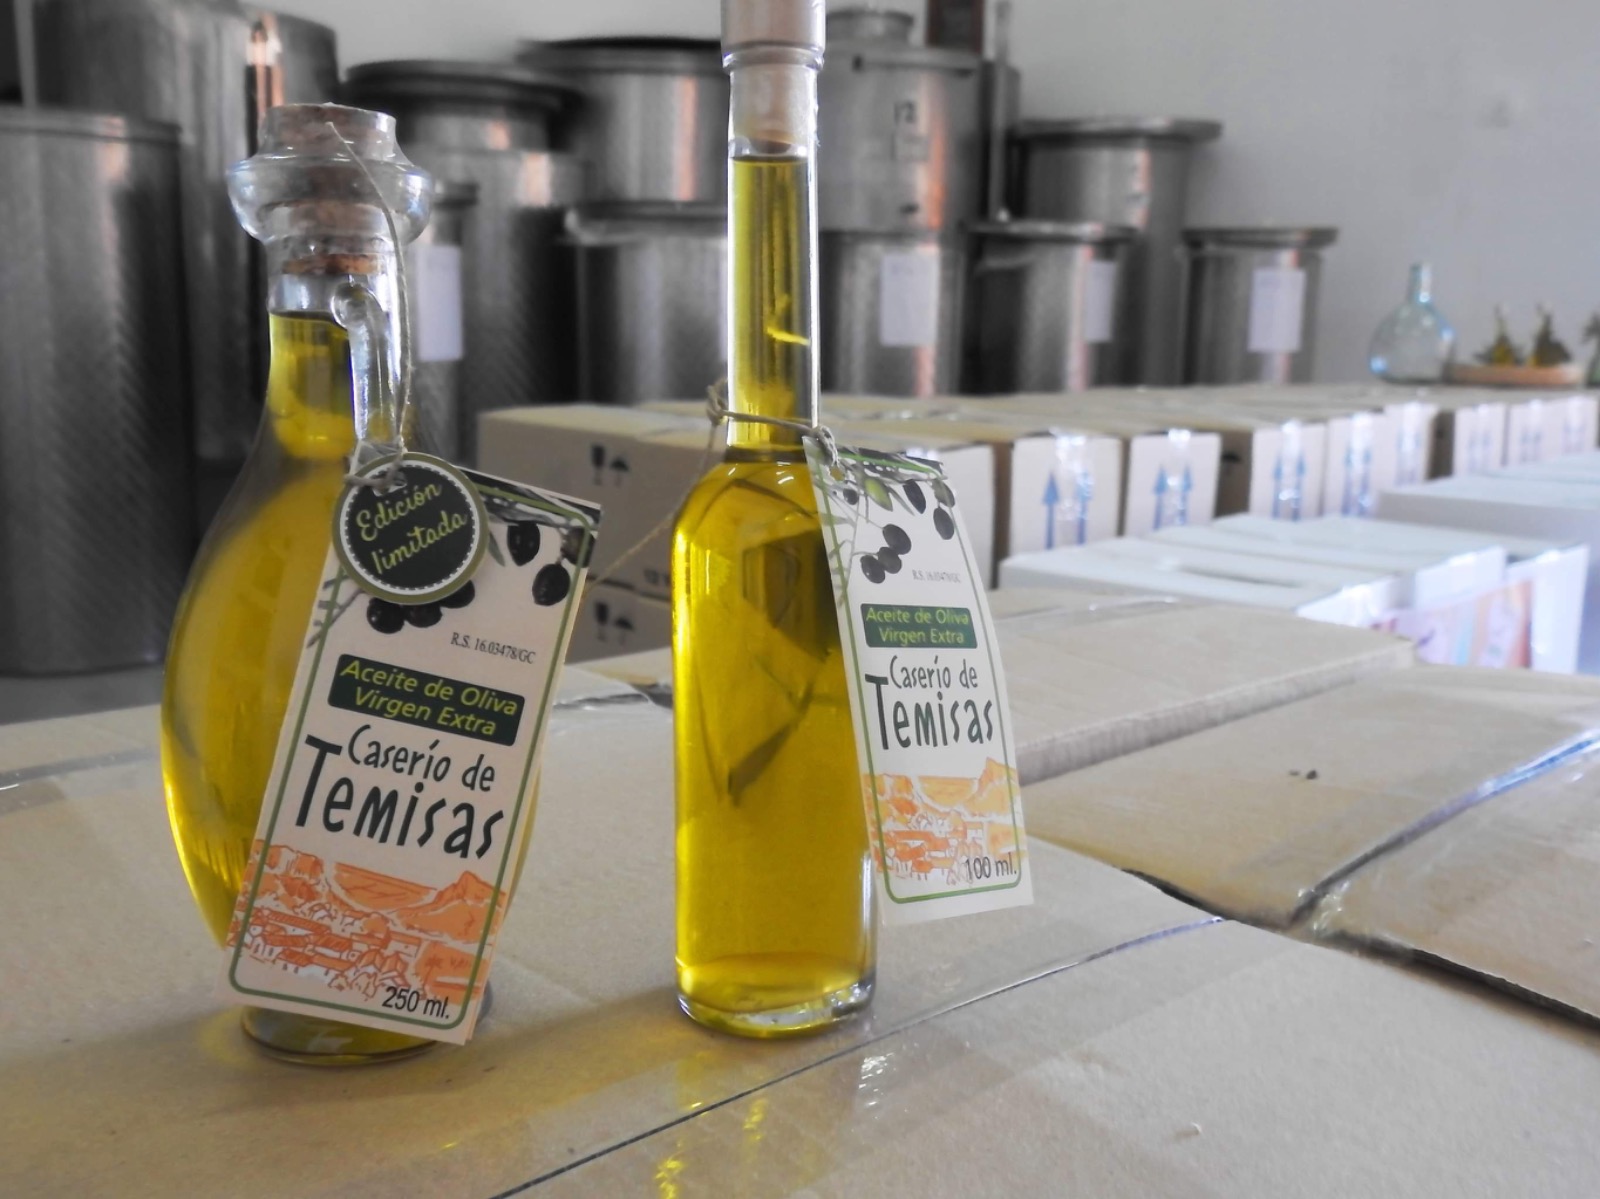 Aceite de oliva virgen extra Caserío de Temisas / CanariasNoticias.es